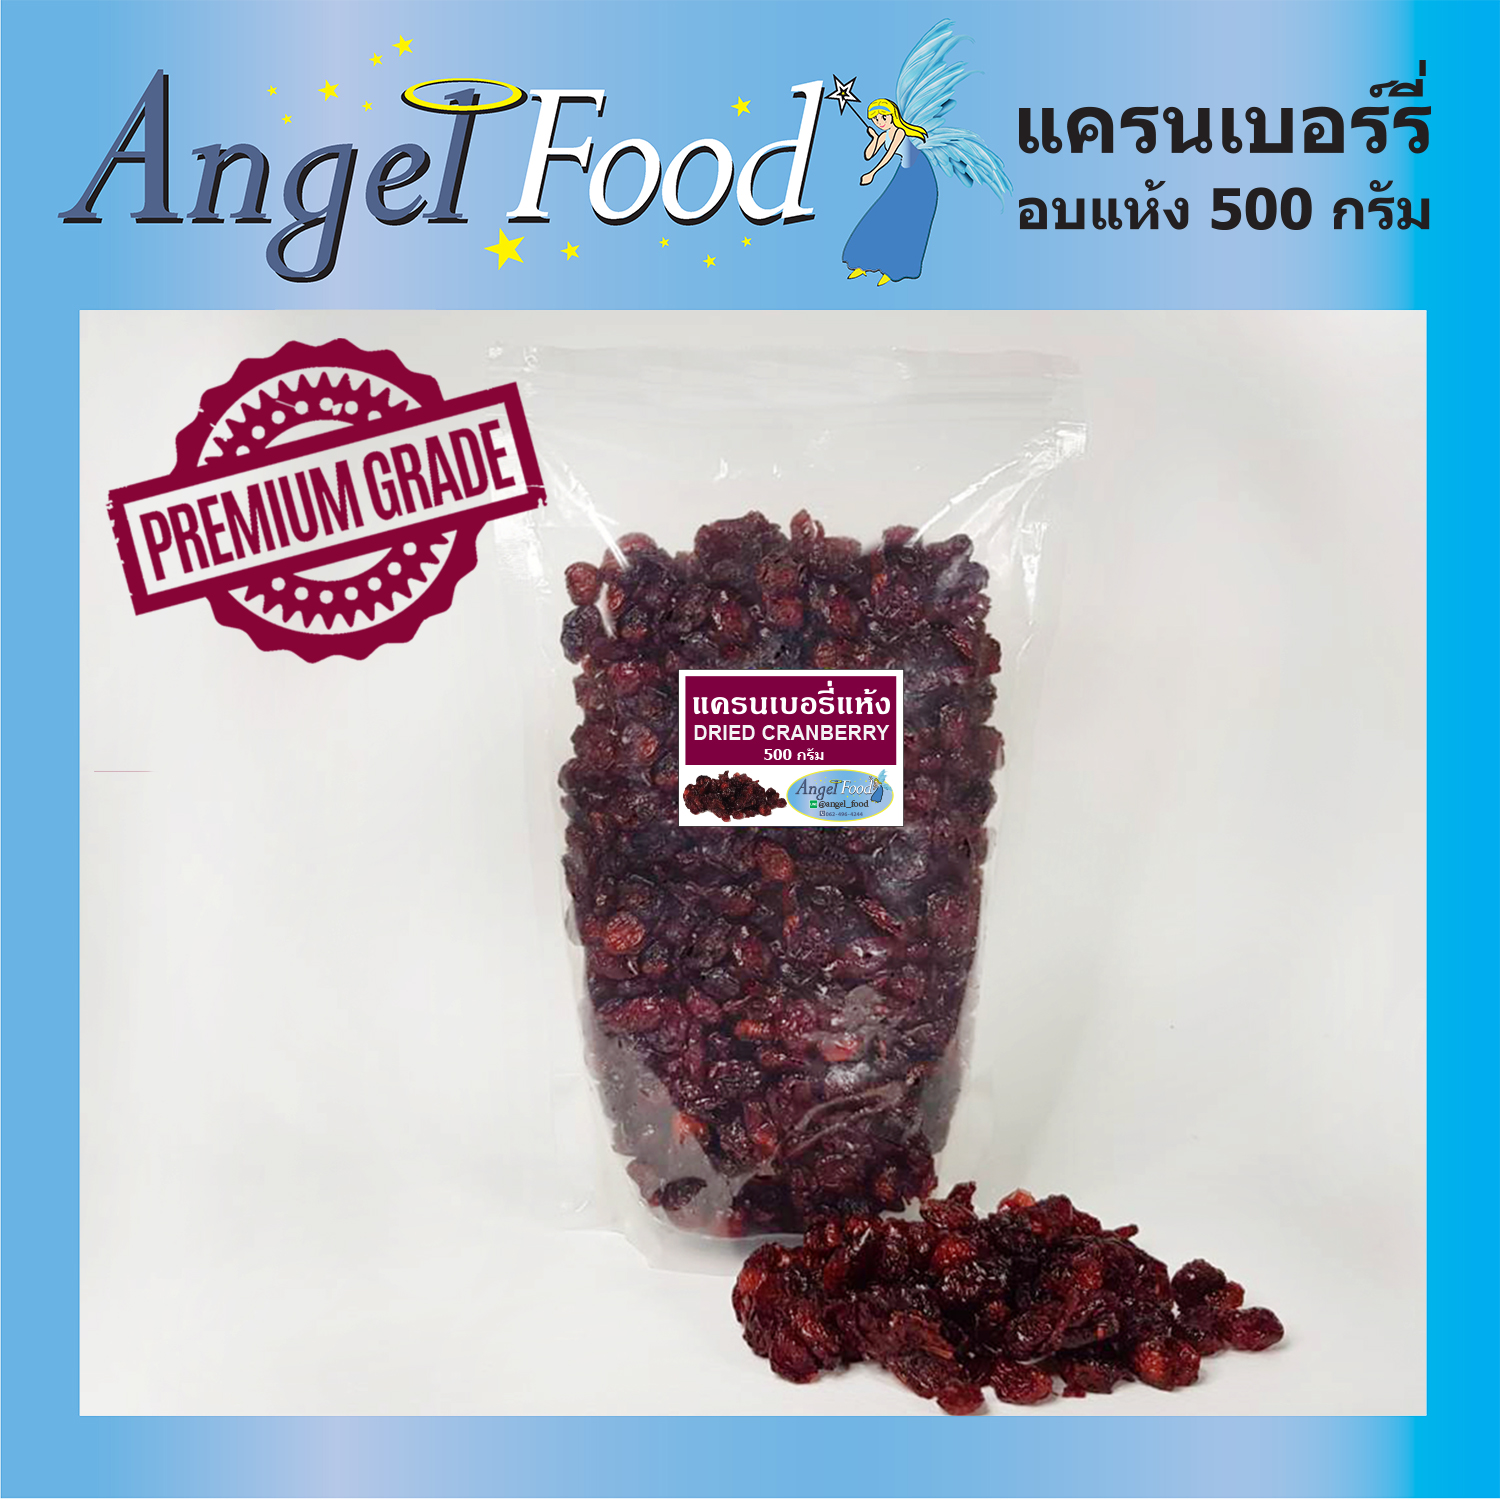 แครนเบอรี่อบแห้ง Dried Cranberry [ขนาด 500 กรัม] เกรด A ไม่มีน้ำตาล นำเข้าจากอเมริกา